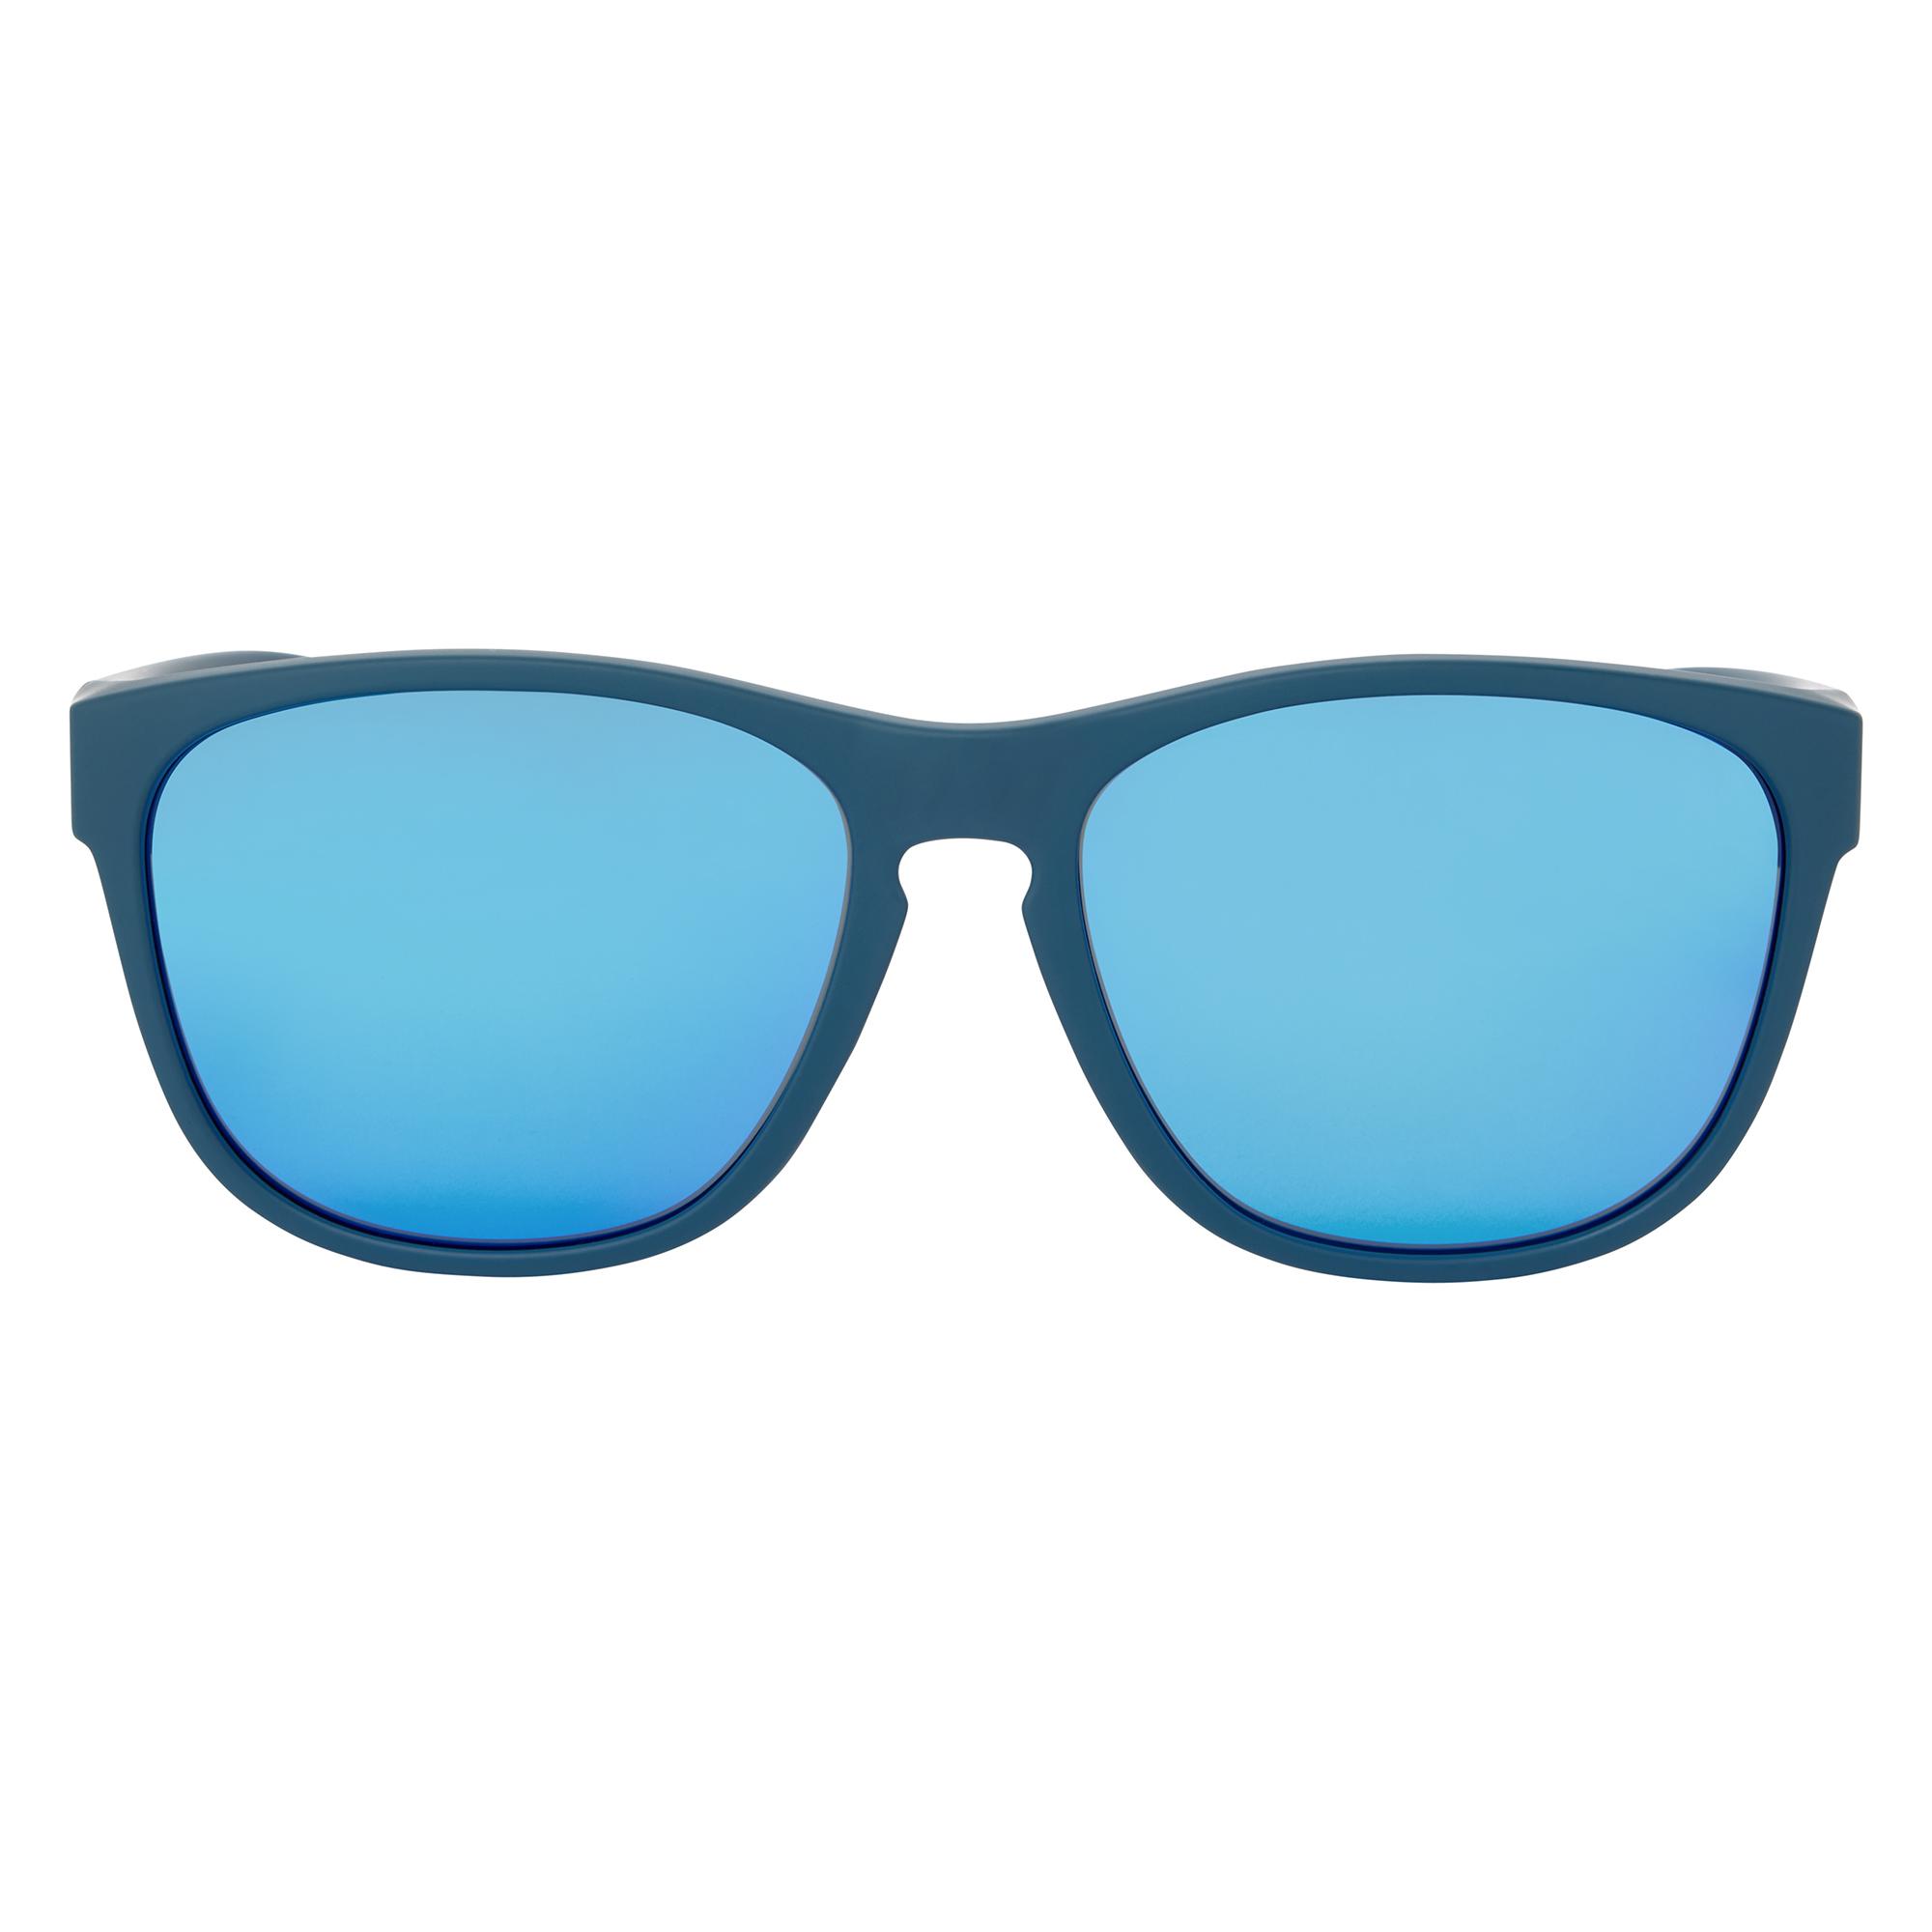 Dhb Umbra Sunglasses - Navy/blue